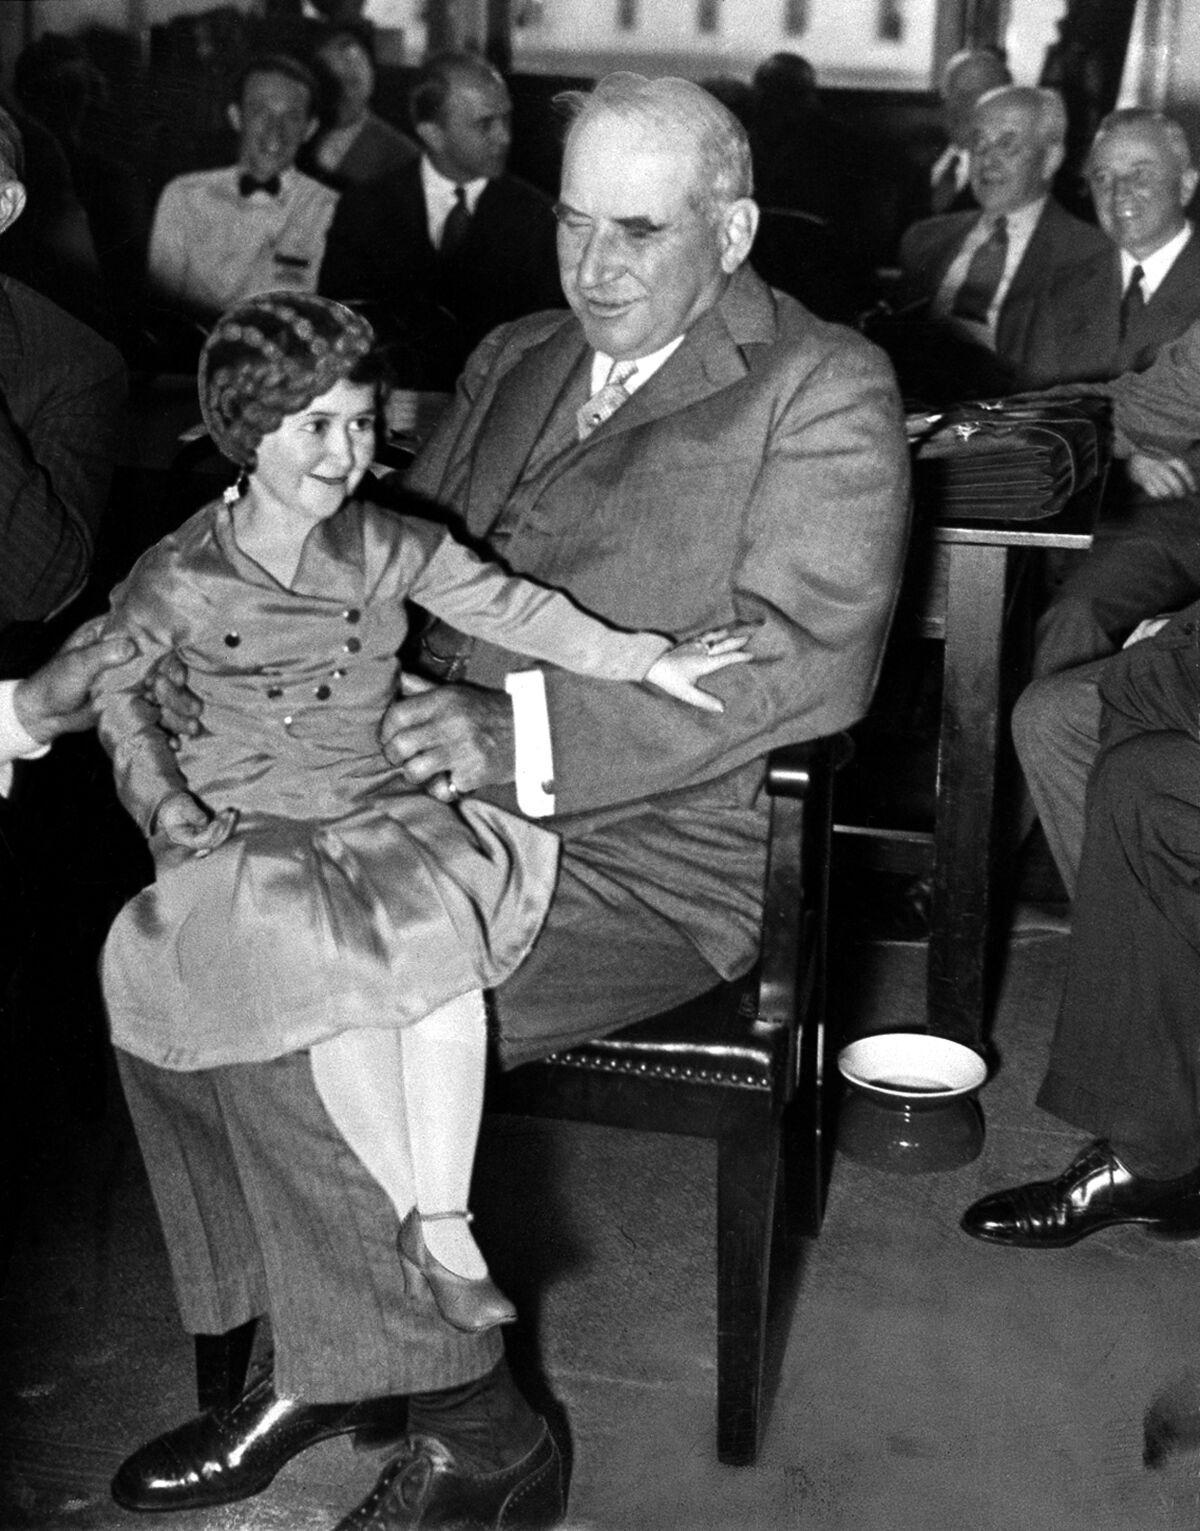 J.P. "Jack" Morgan Jr. sostiene a la intérprete Lya Graf en su rodilla durante las audiencias de Pecora en 1933.